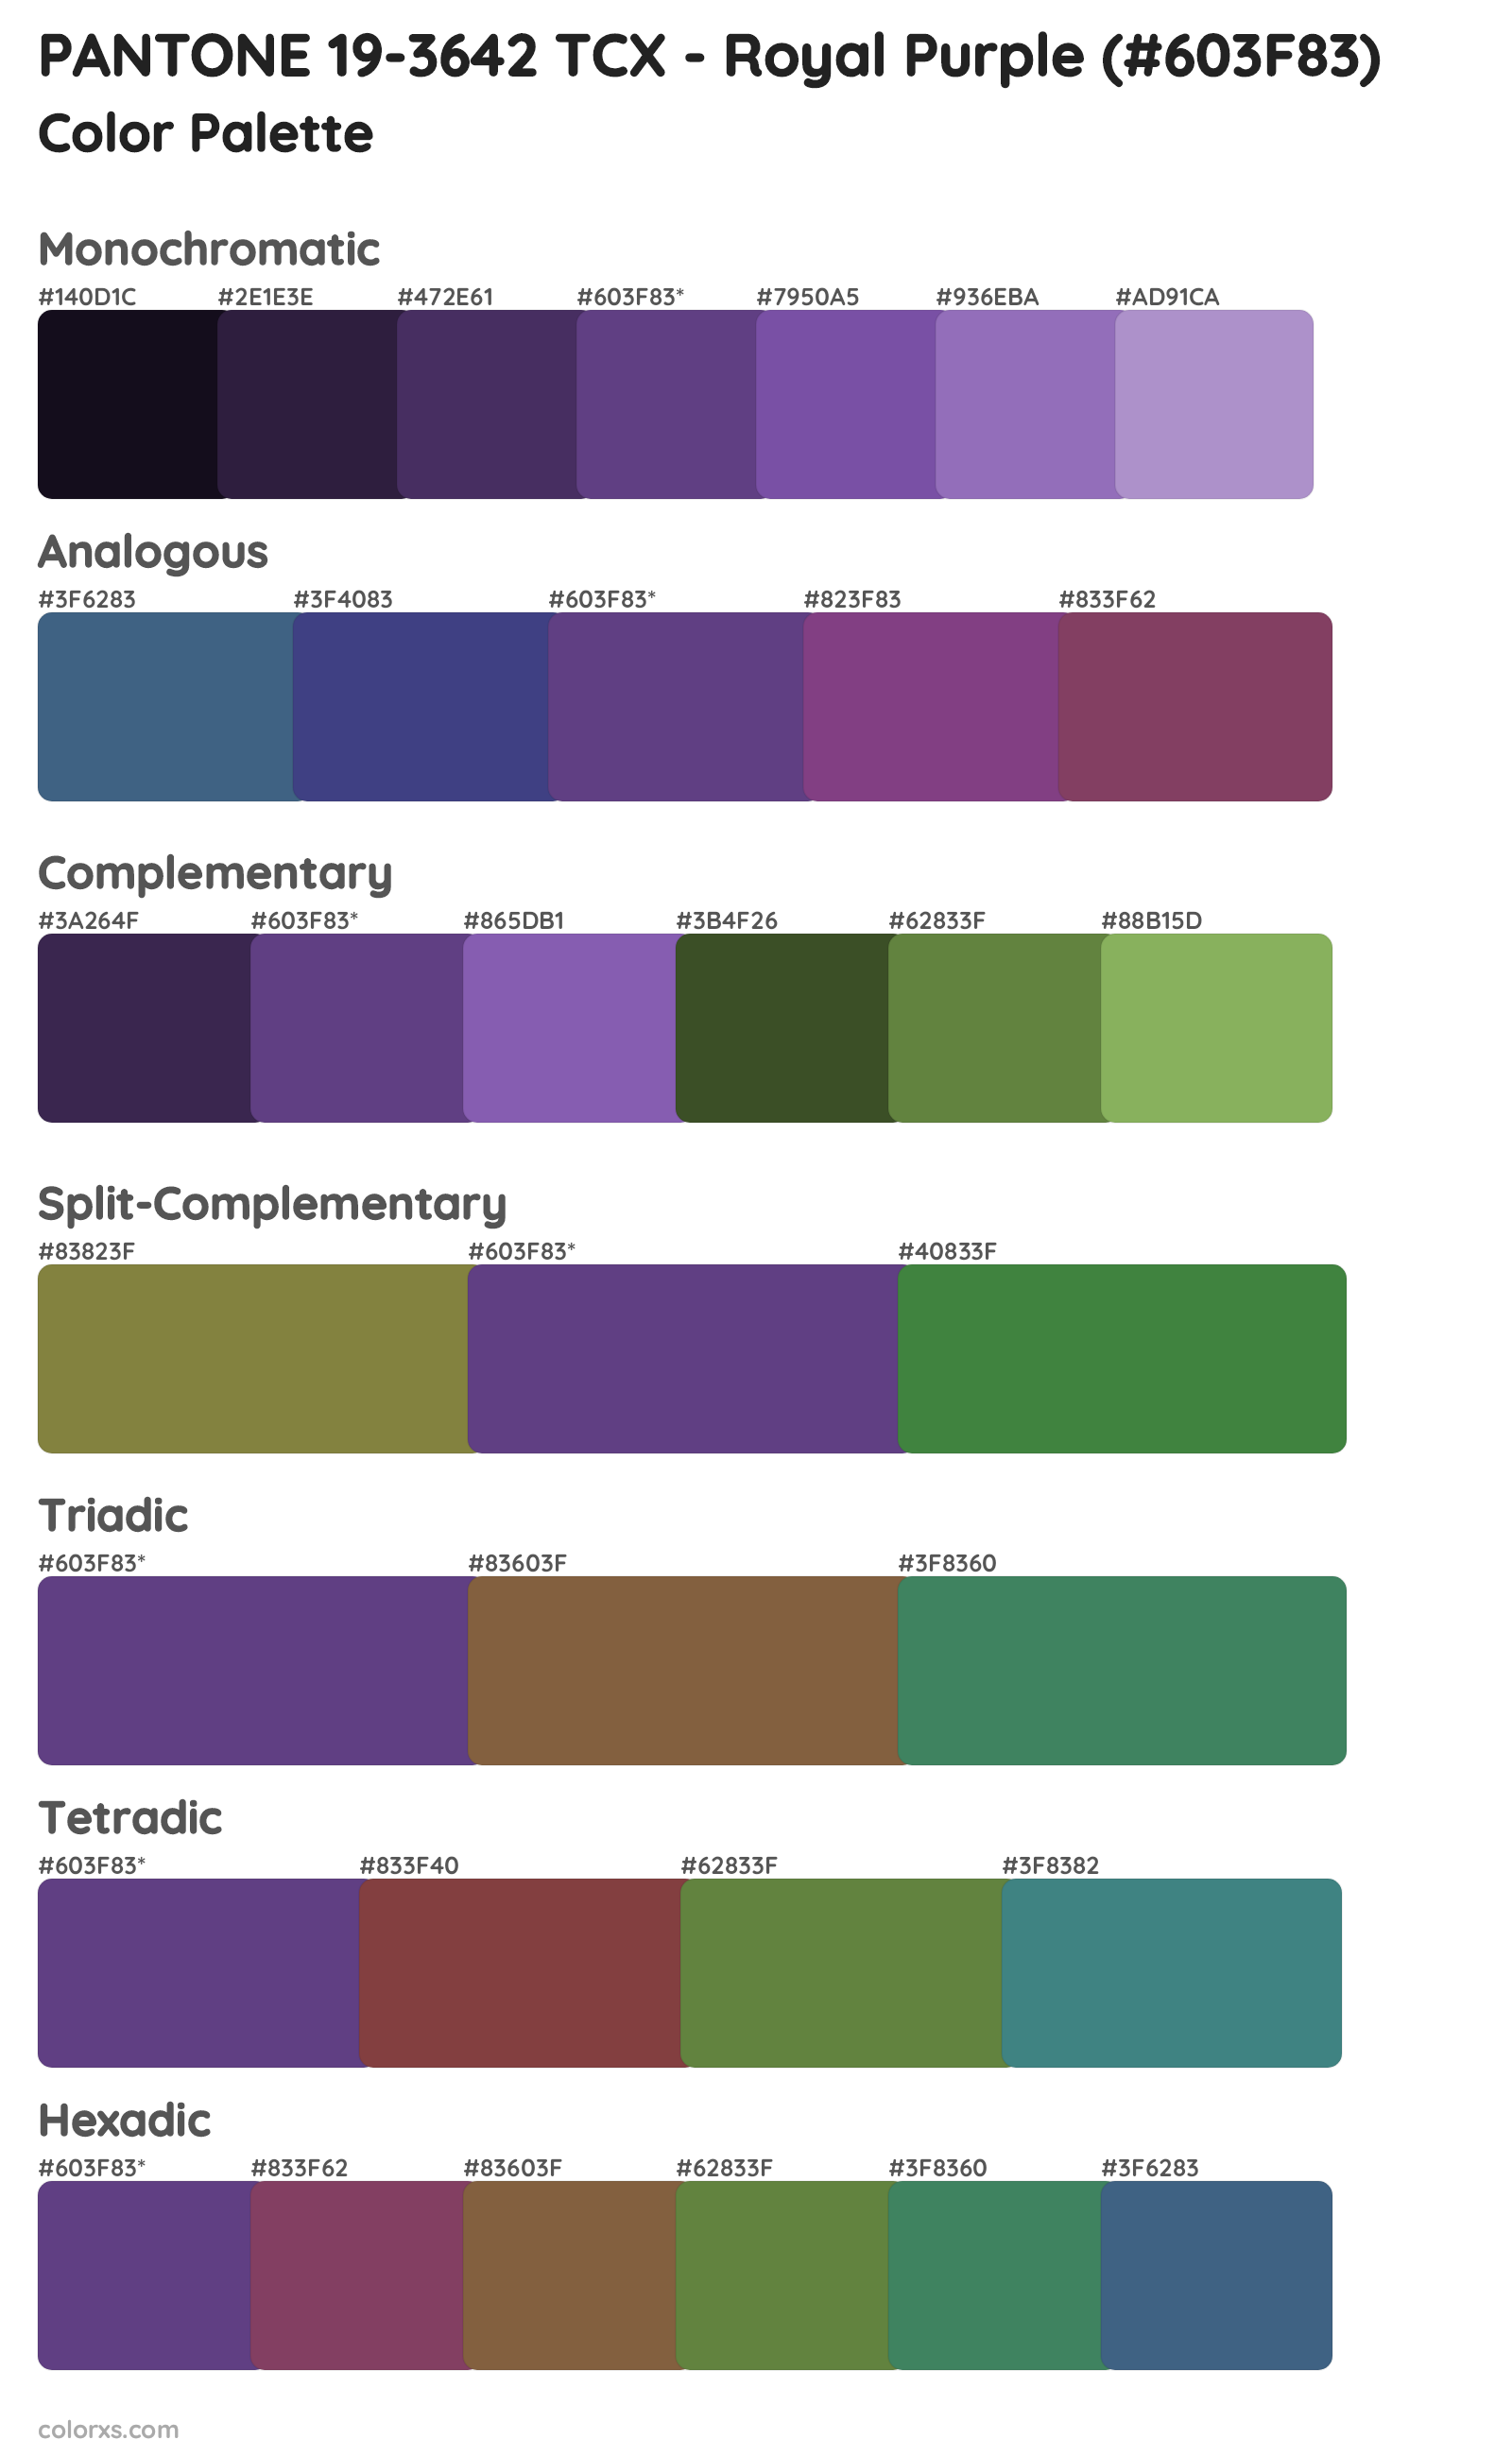 PANTONE 19-3642 TCX - Royal Purple Color Scheme Palettes